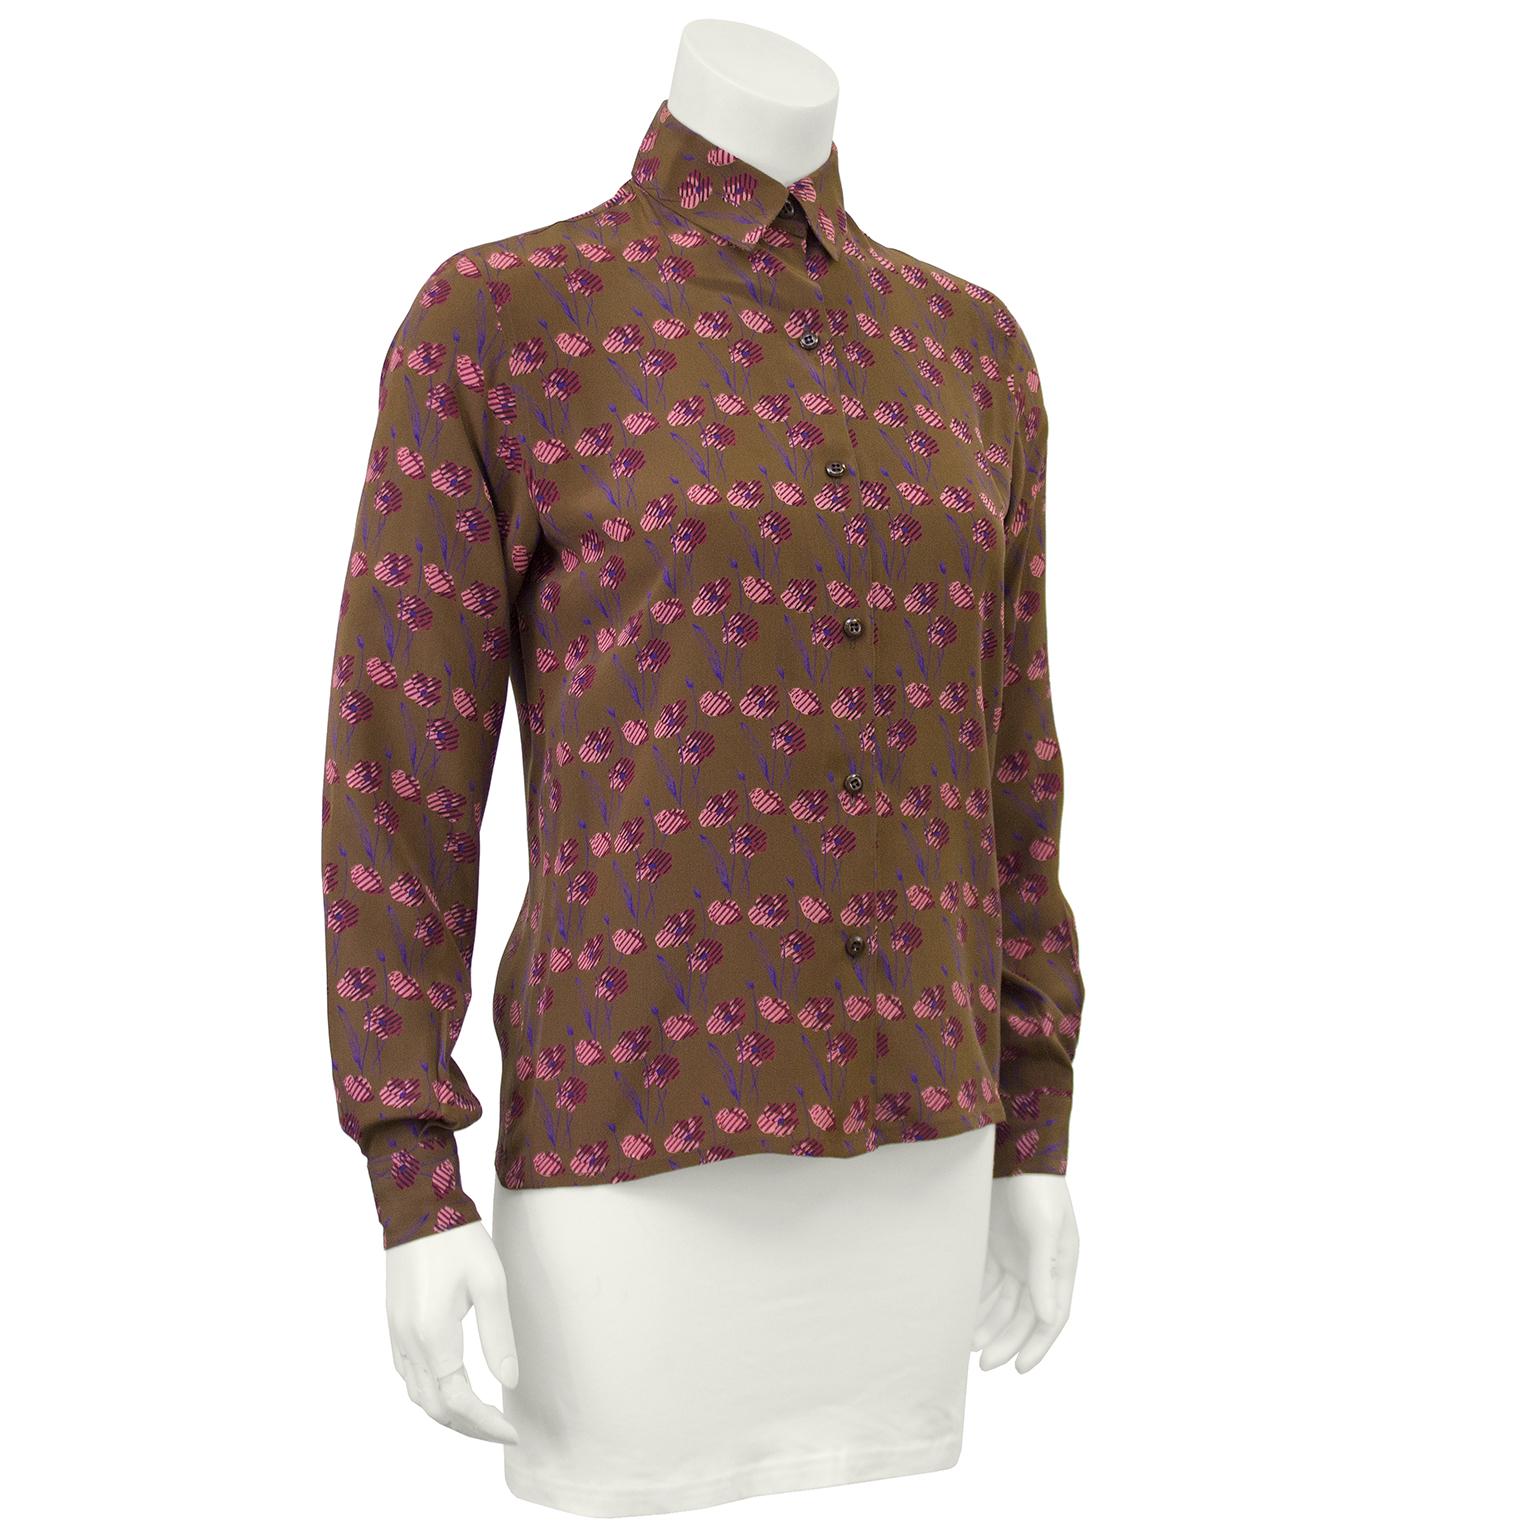 Braune geblümte Seidenbluse von Ferragamo aus den 1980er Jahren. Die Bluse ist mit abstrakten rosa und lila Blumen bedruckt. Die Bluse wird vorne mit braunen Kunststoffknöpfen geschlossen. Knopfmanschetten, frei von Flecken und Löchern. Passt in US